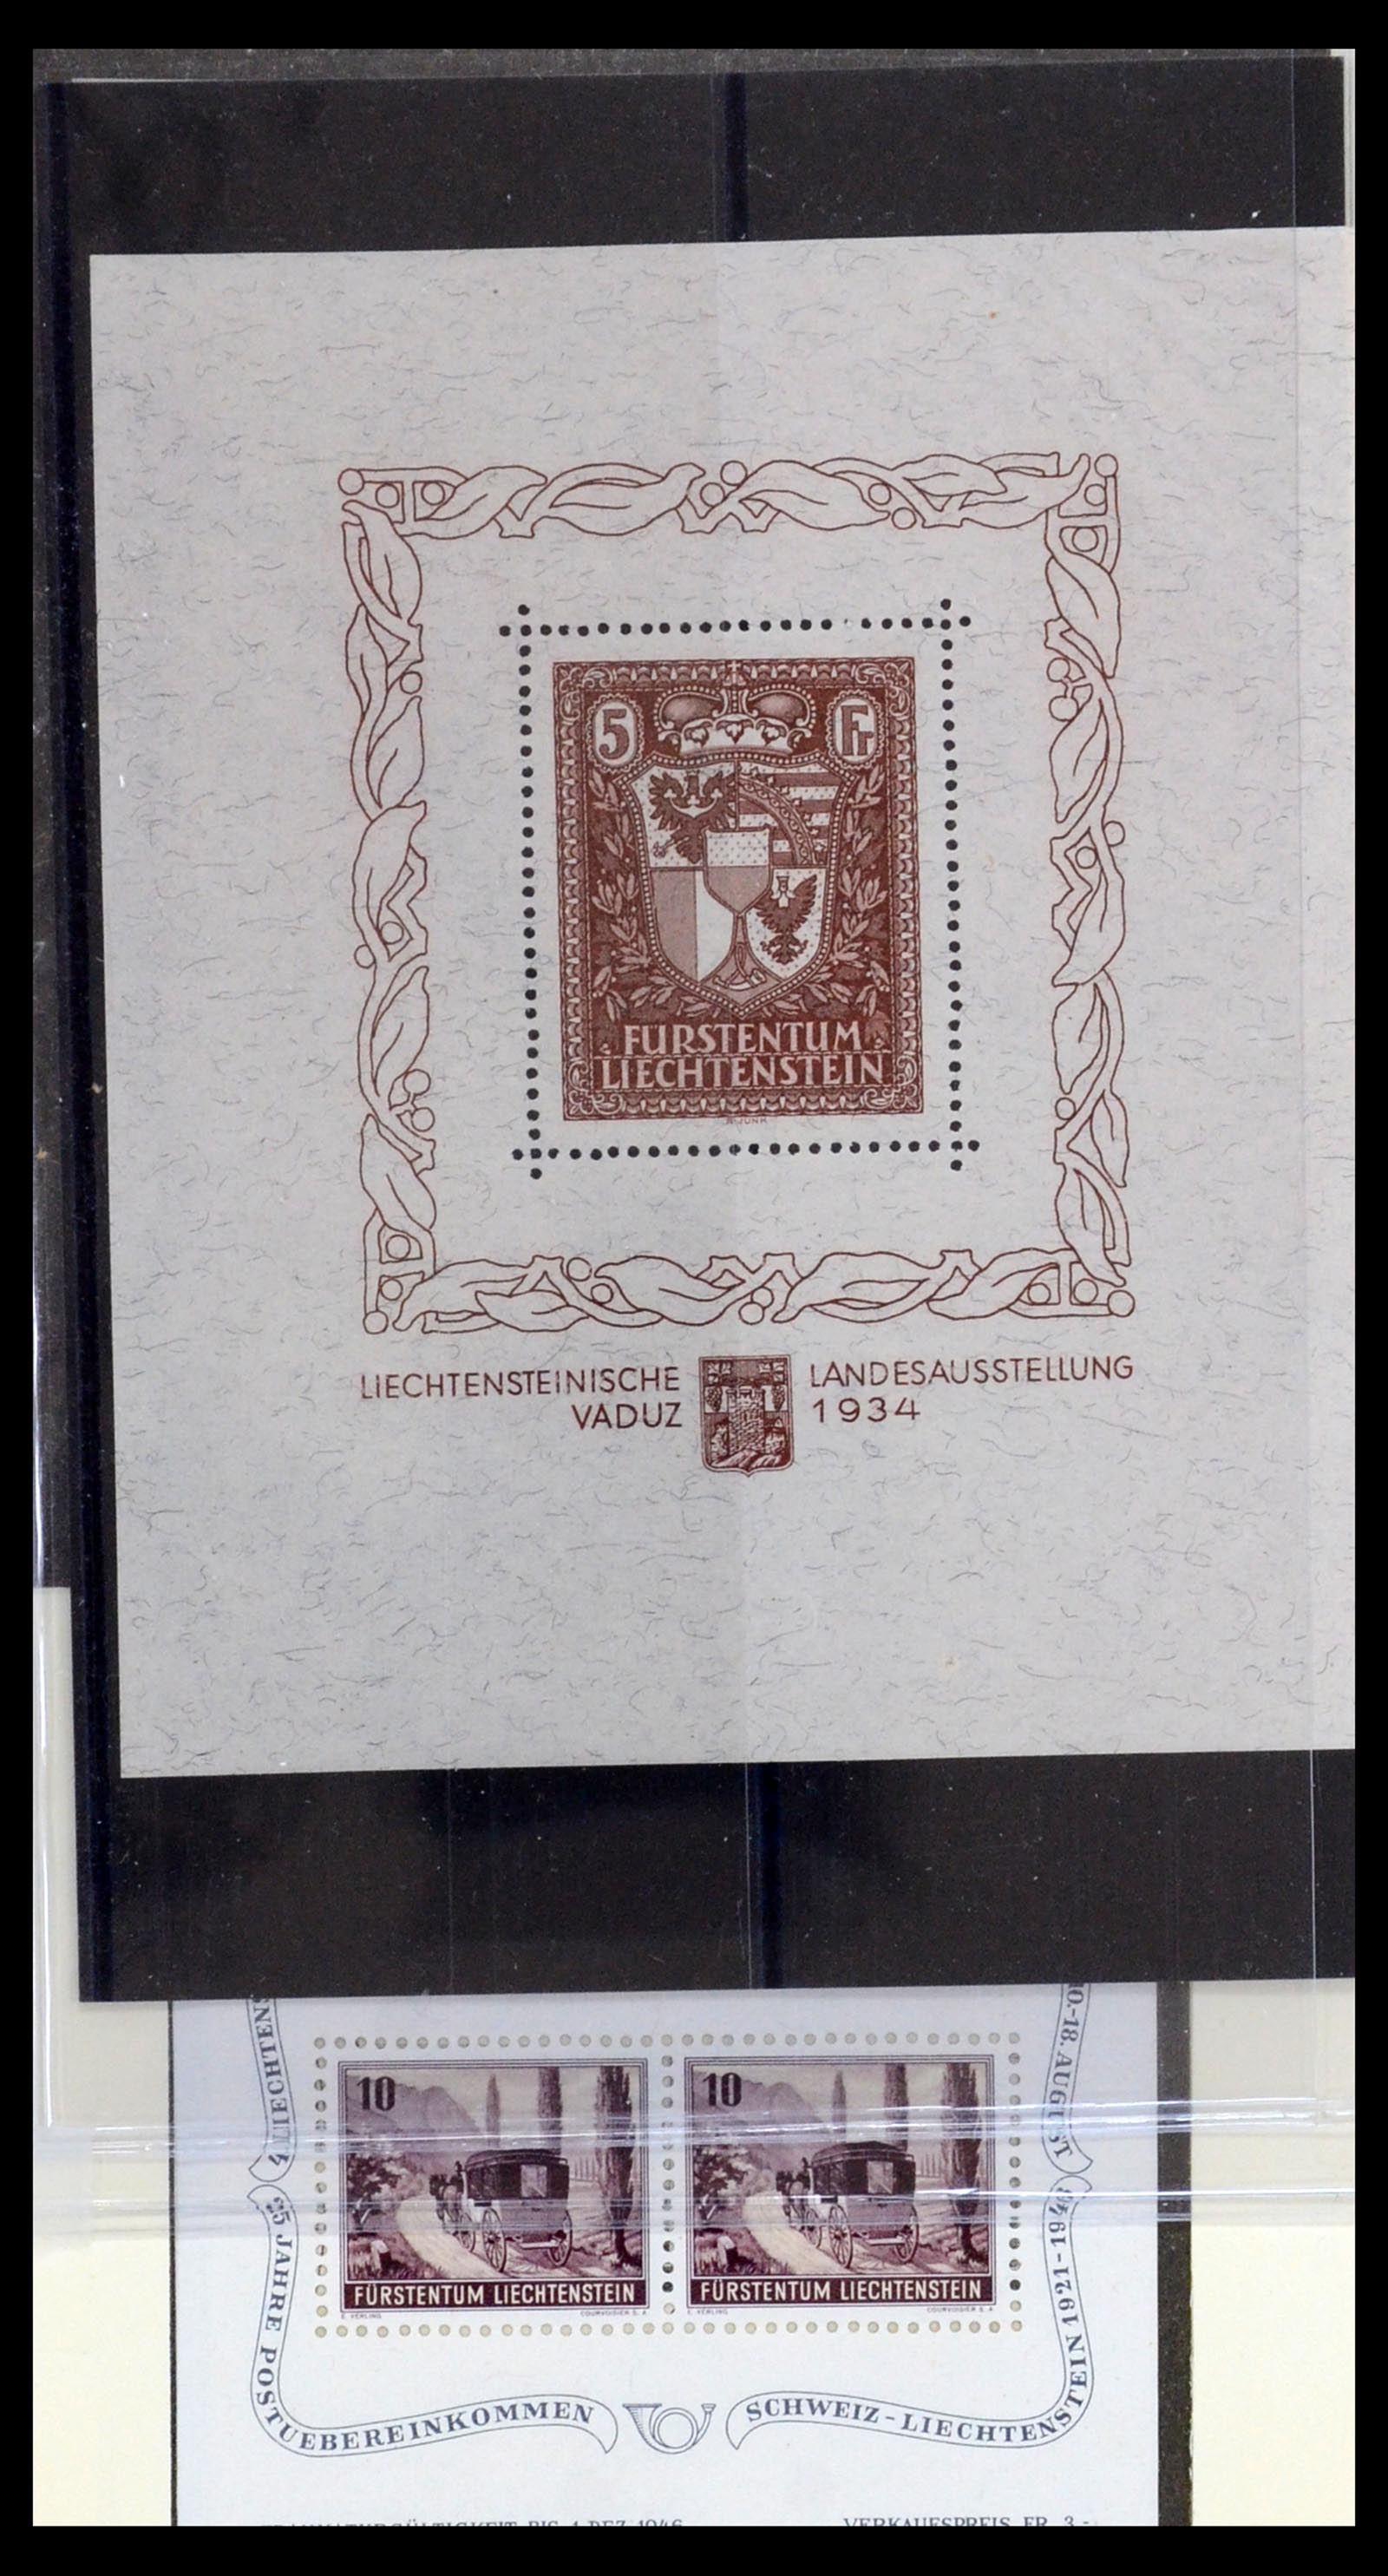 36280 051 - Stamp collection 36280 Liechtenstein souvenir sheets and sheetlets 1934-